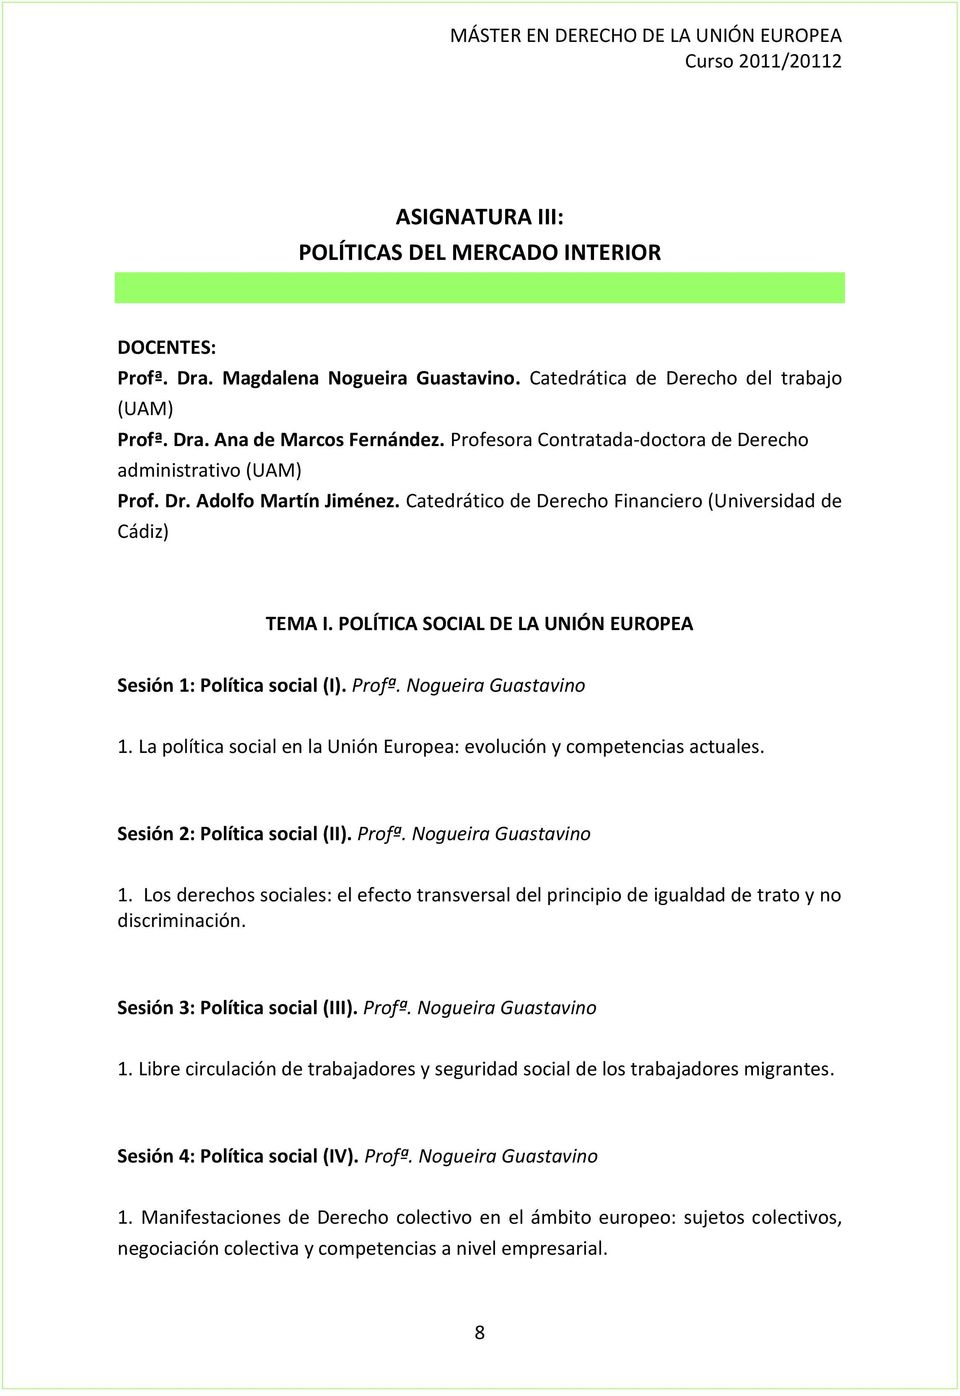 POLÍTICA SOCIAL DE LA UNIÓN EUROPEA Sesión 1: Política social (I). Profª. Nogueira Guastavino 1. La política social en la Unión Europea: evolución y competencias actuales.